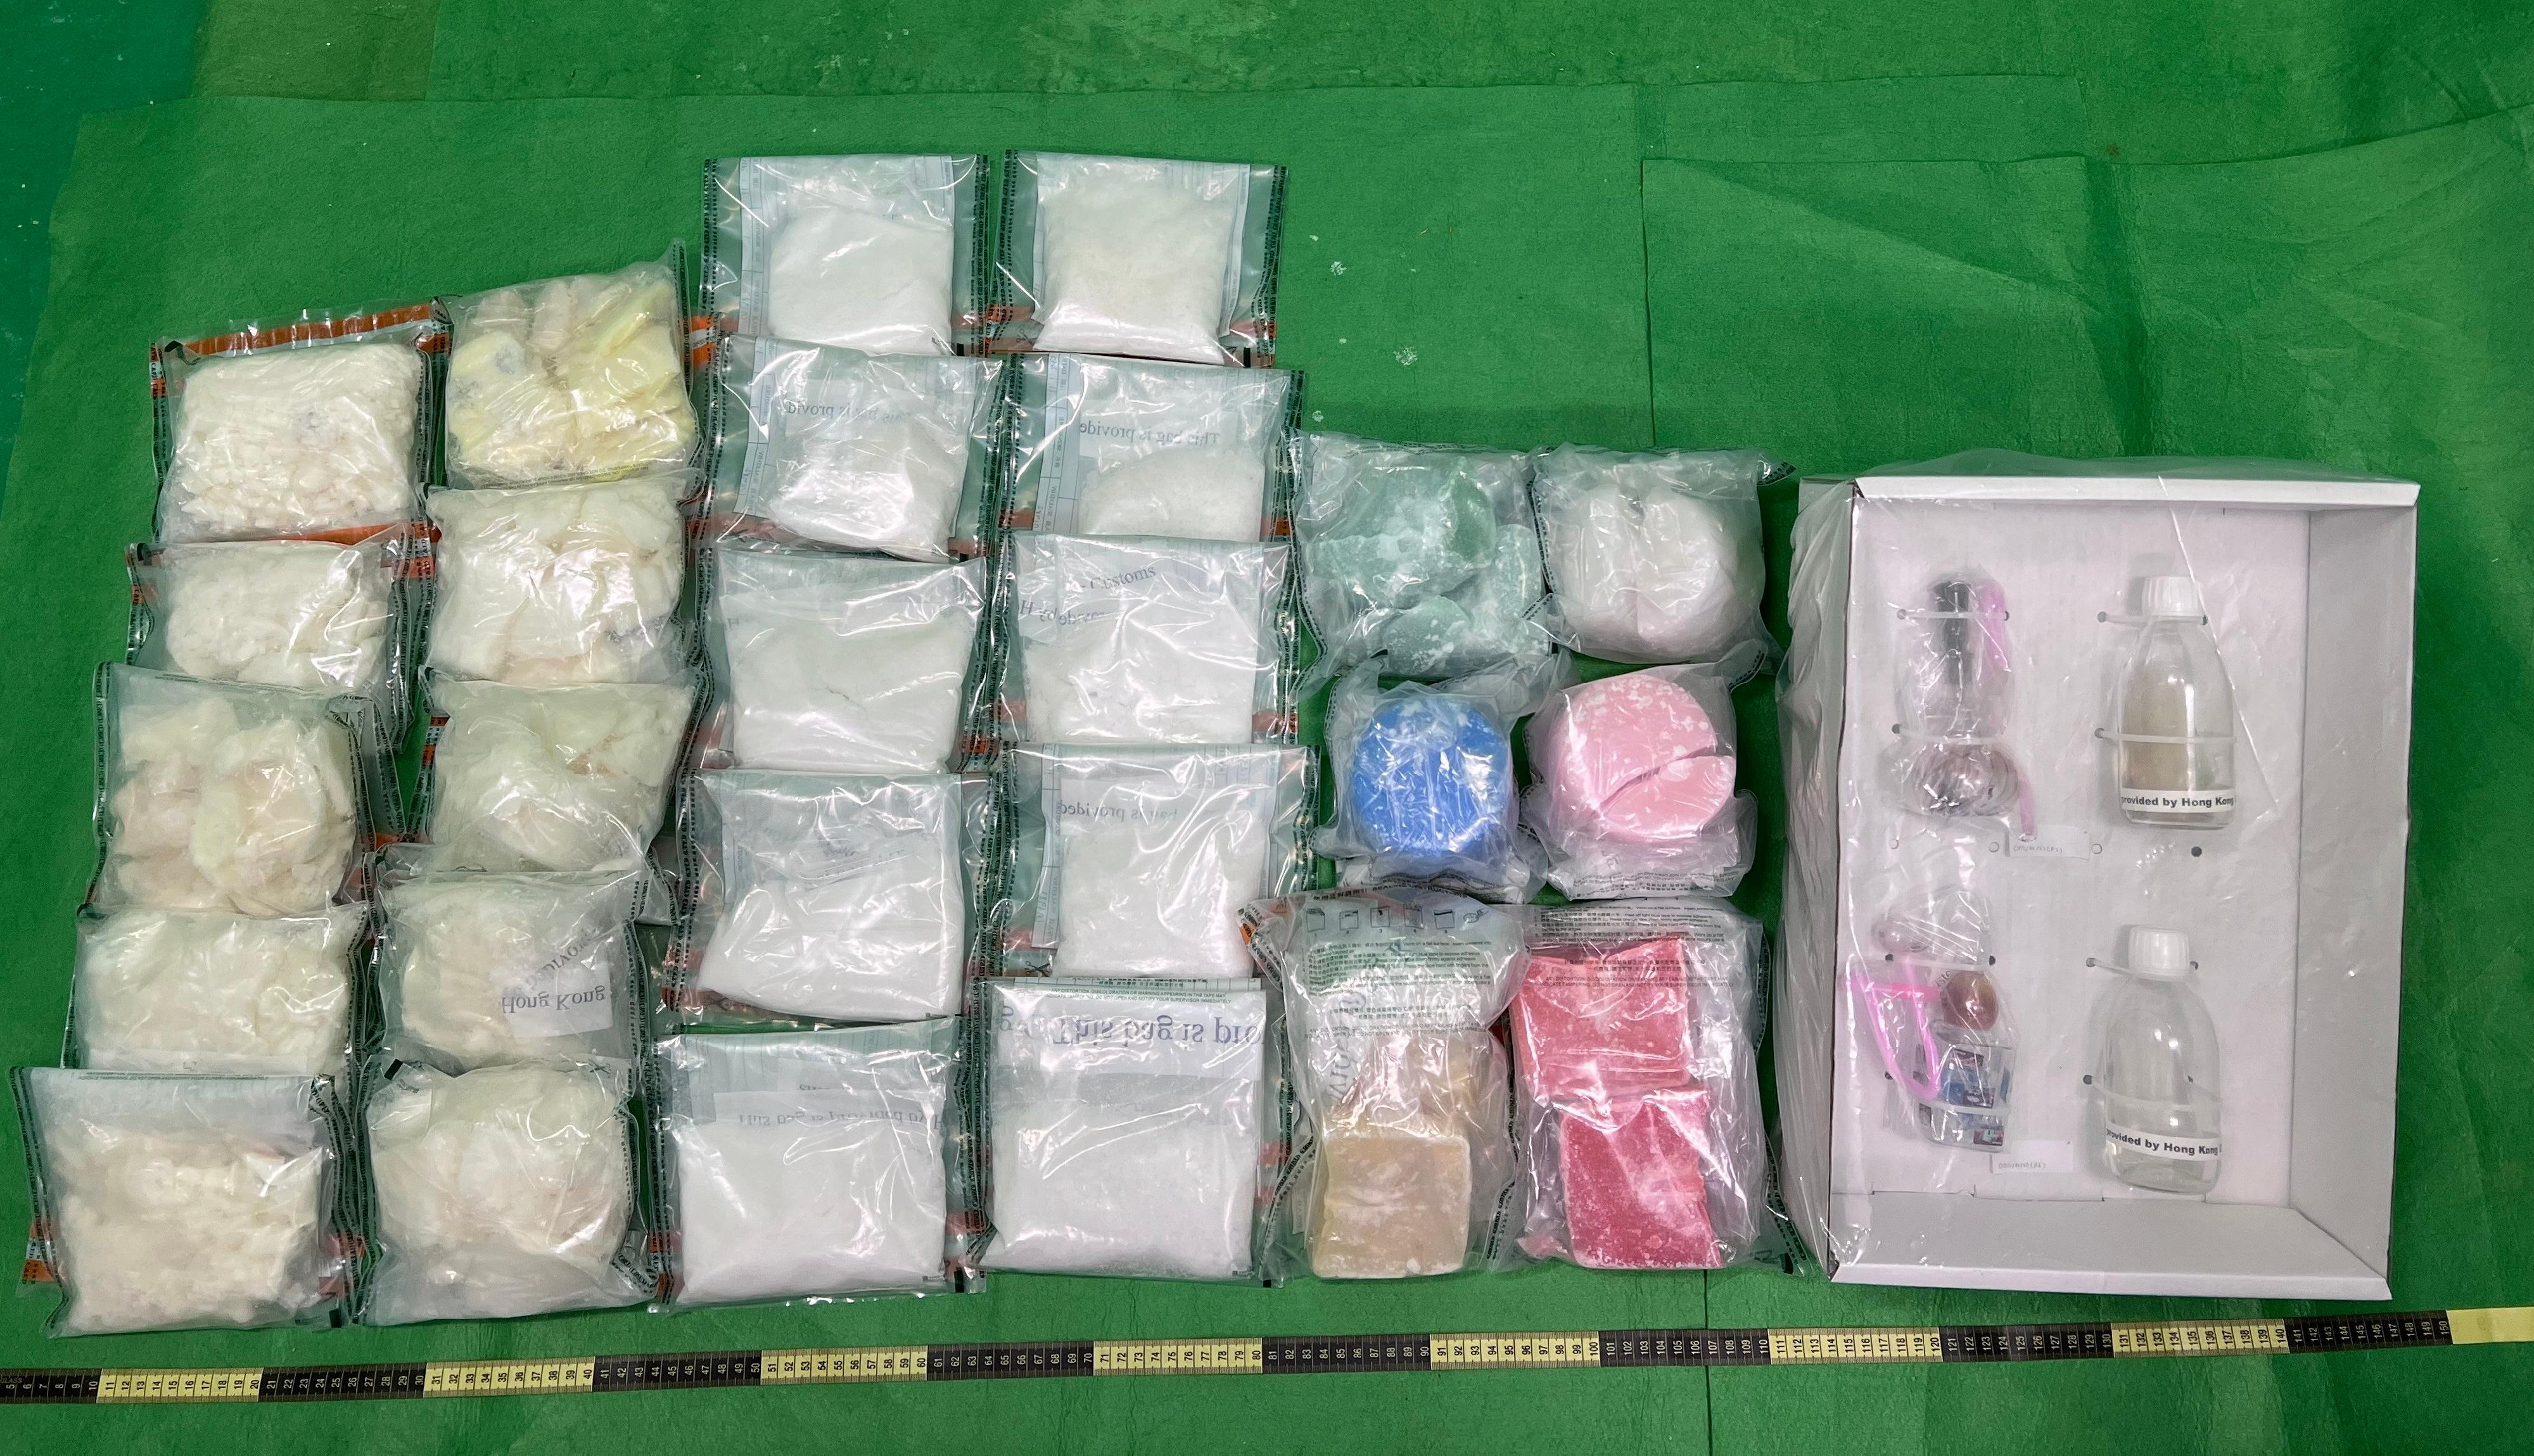 香港海關一月二十六日在香港國際機場檢獲約六點二公斤懷疑冰毒，估計市值約三百五十萬元。圖示檢獲的懷疑冰毒、被混入毒品的蠟燭和兩件懷疑毒品吸食工具。